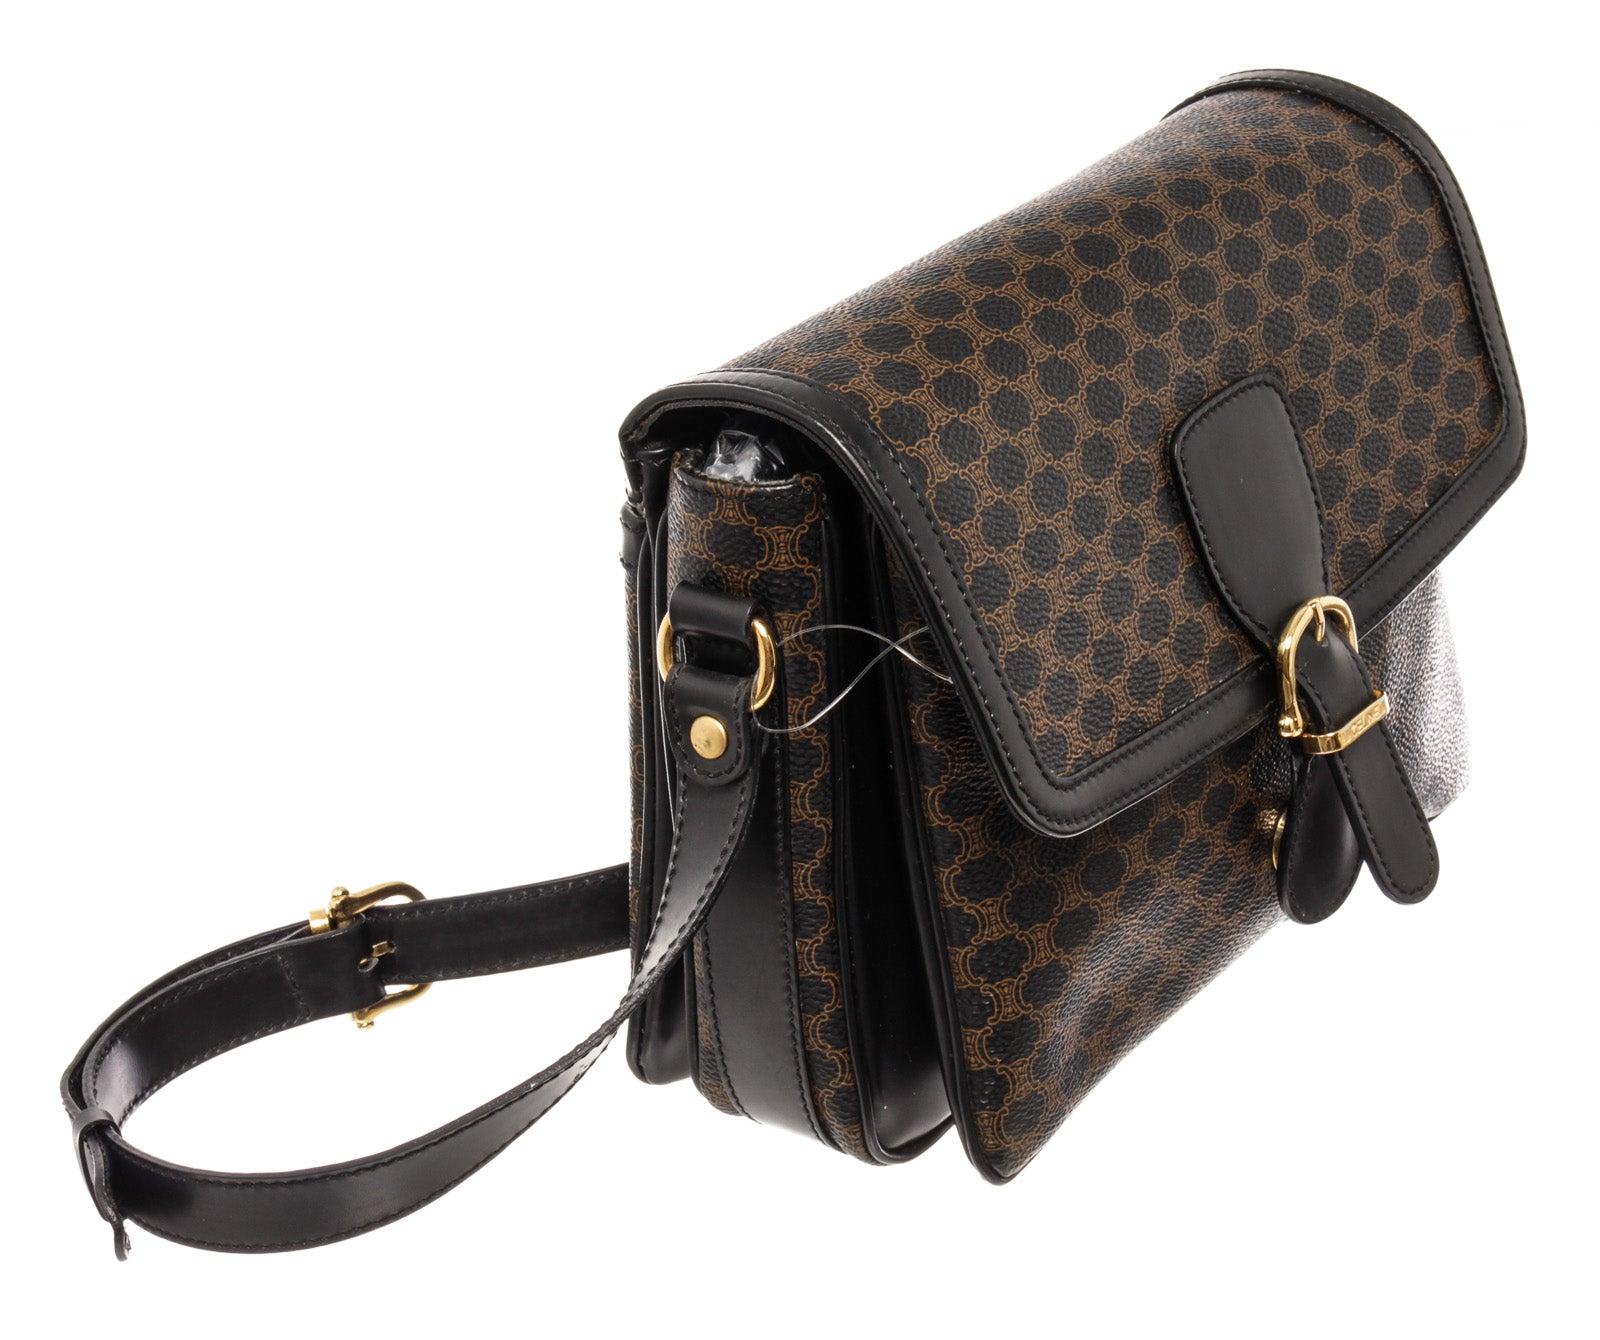 Black leather Macadam pattern Celine shoulder bag with gold-tone hardware, trim leather, interior zip pocket, shoulder strap and magnetic closure.

59035MSC